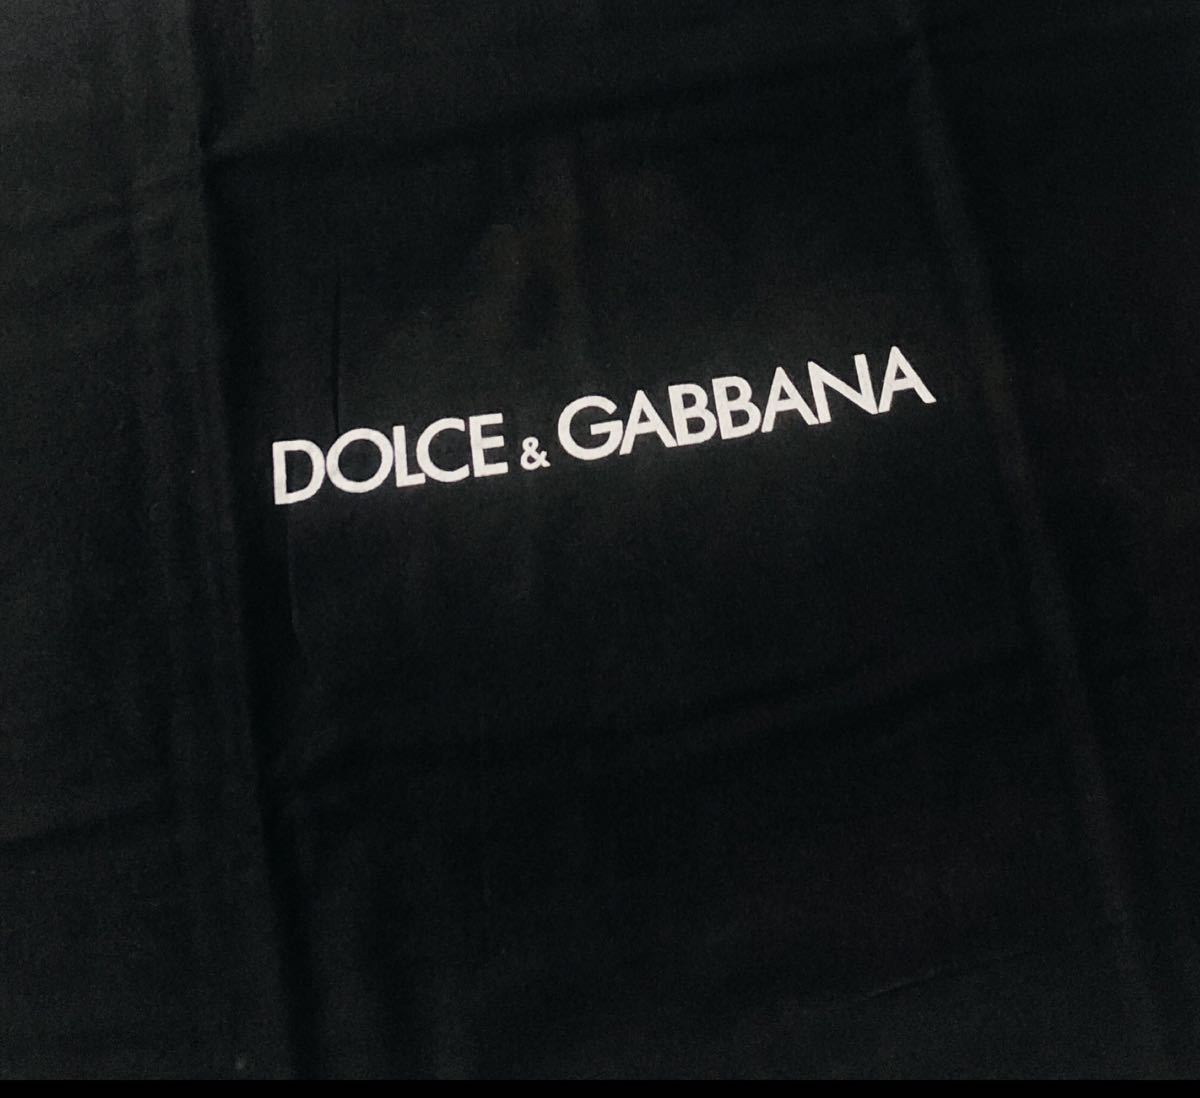 ドルチェ&ガッバーナ「DOLCE&GABBANA 」バッグ保存袋 (3666) 正規品 付属品 内袋 布袋 巾着袋 68×56cm ブラック 布製 特大サイズ_画像3